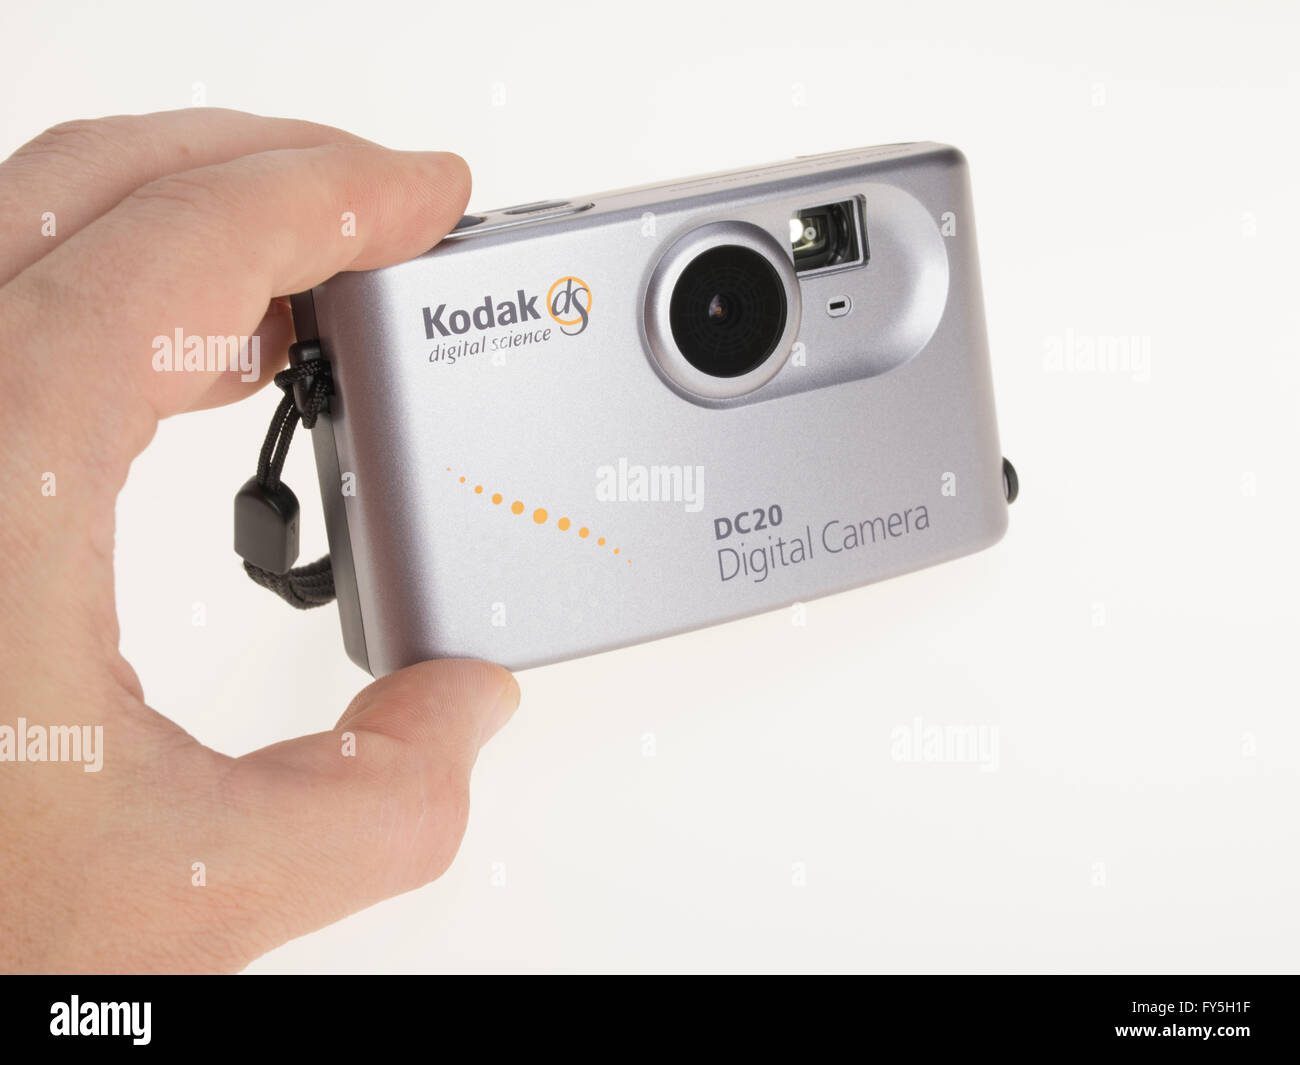 DS Kodak Digital Science DC20 appareil photo numérique publié par Kodak en 1996 Banque D'Images